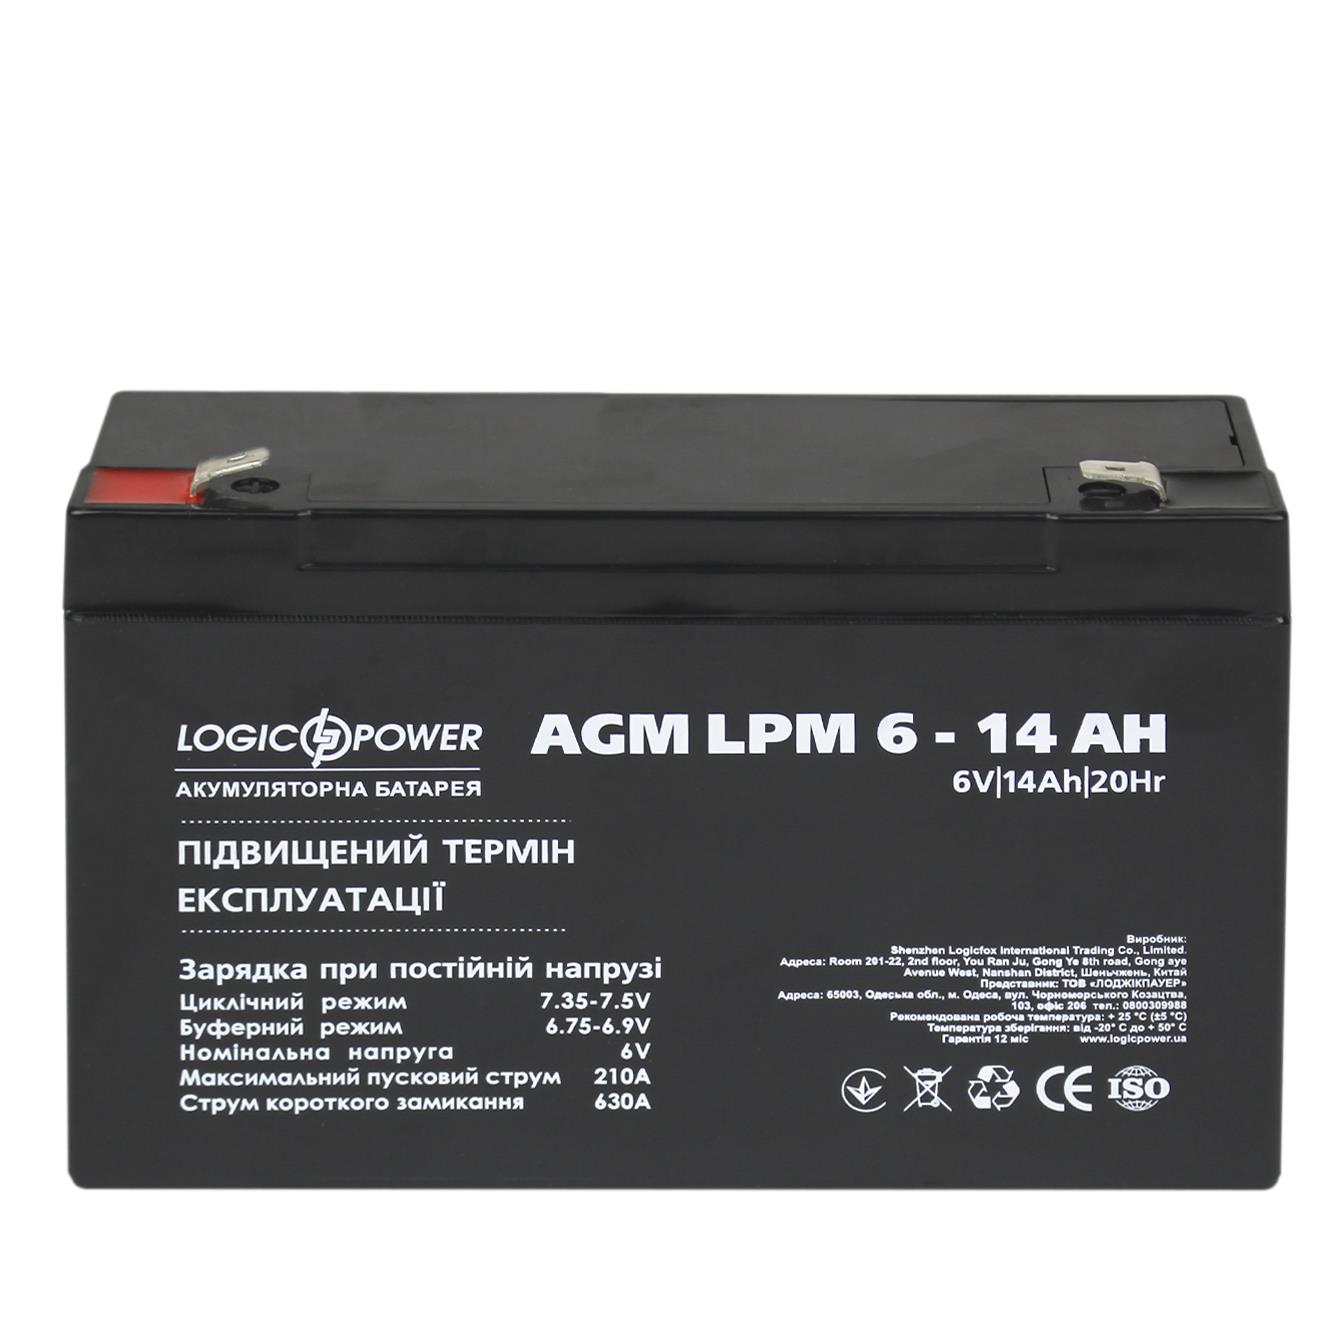 продаём LogicPower AGM LPM 6V - 14 Ah (4160) в Украине - фото 4